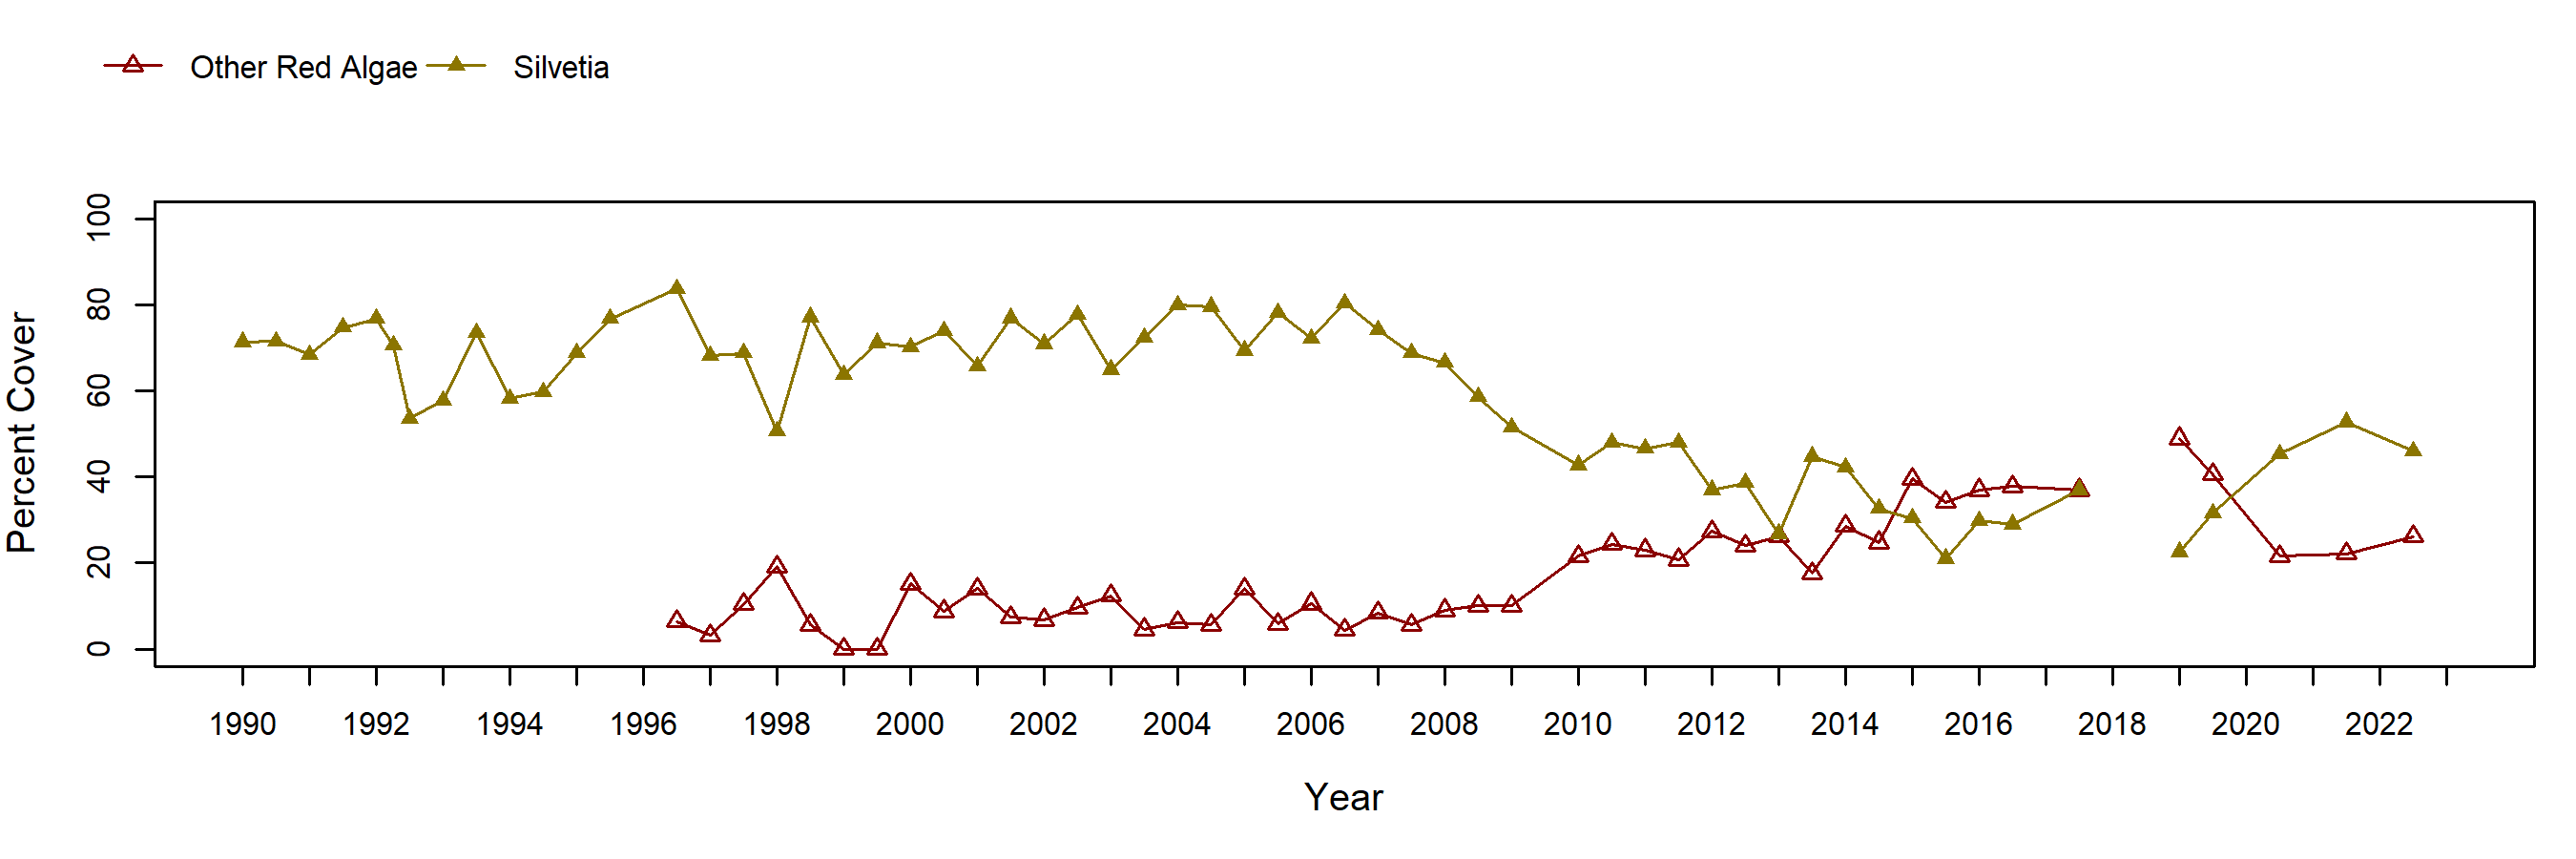 Cabrillo II Silvetia trend plot